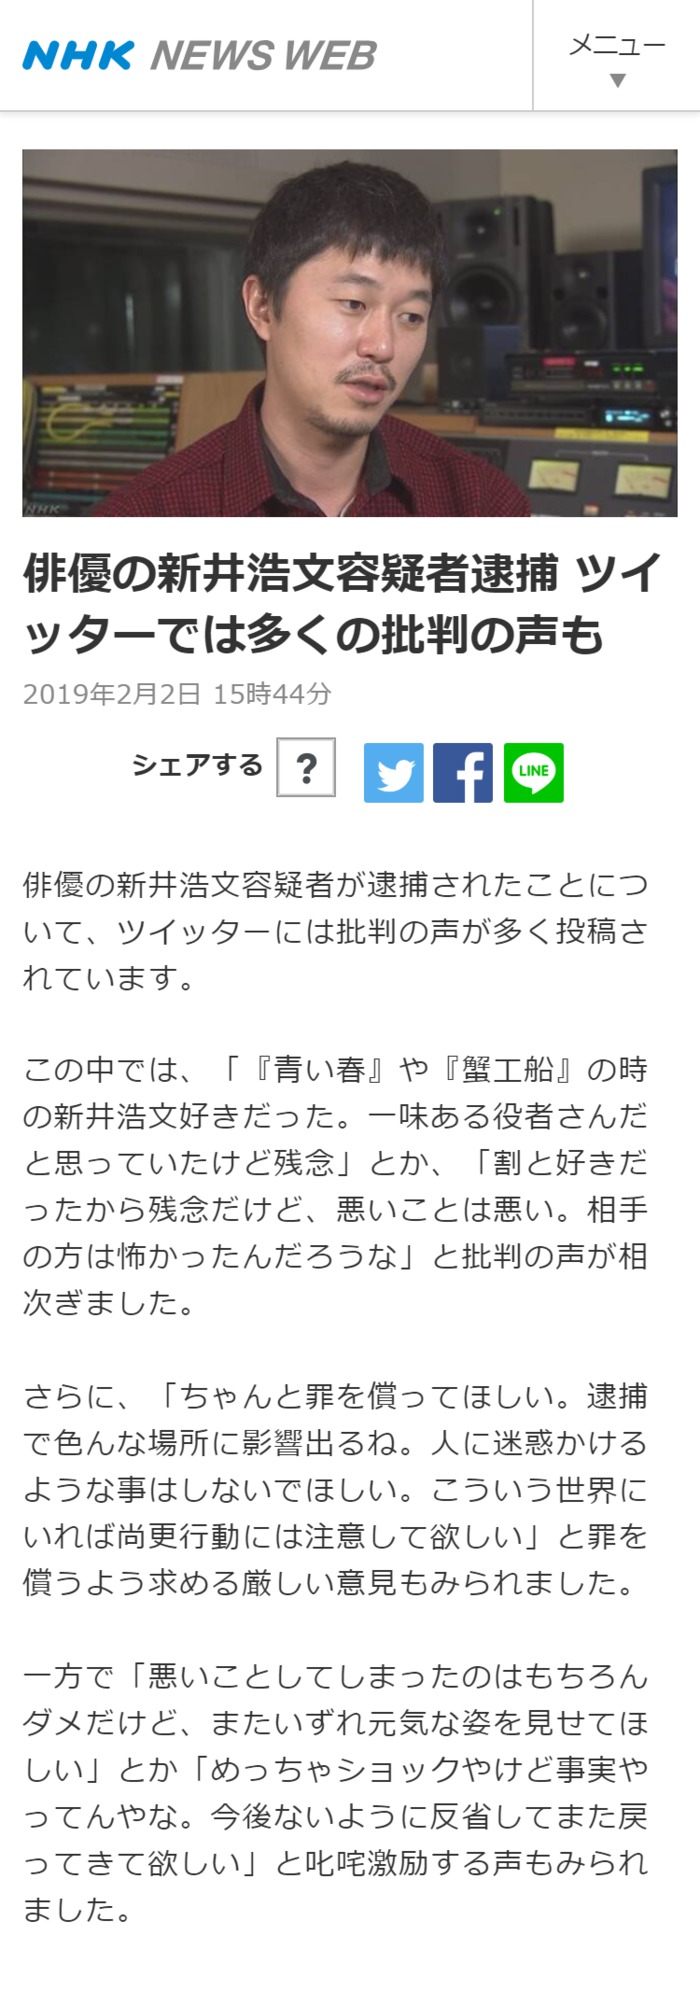 NHKが新井浩文容疑者を擁護するかのような異常な報道をしていると話題に